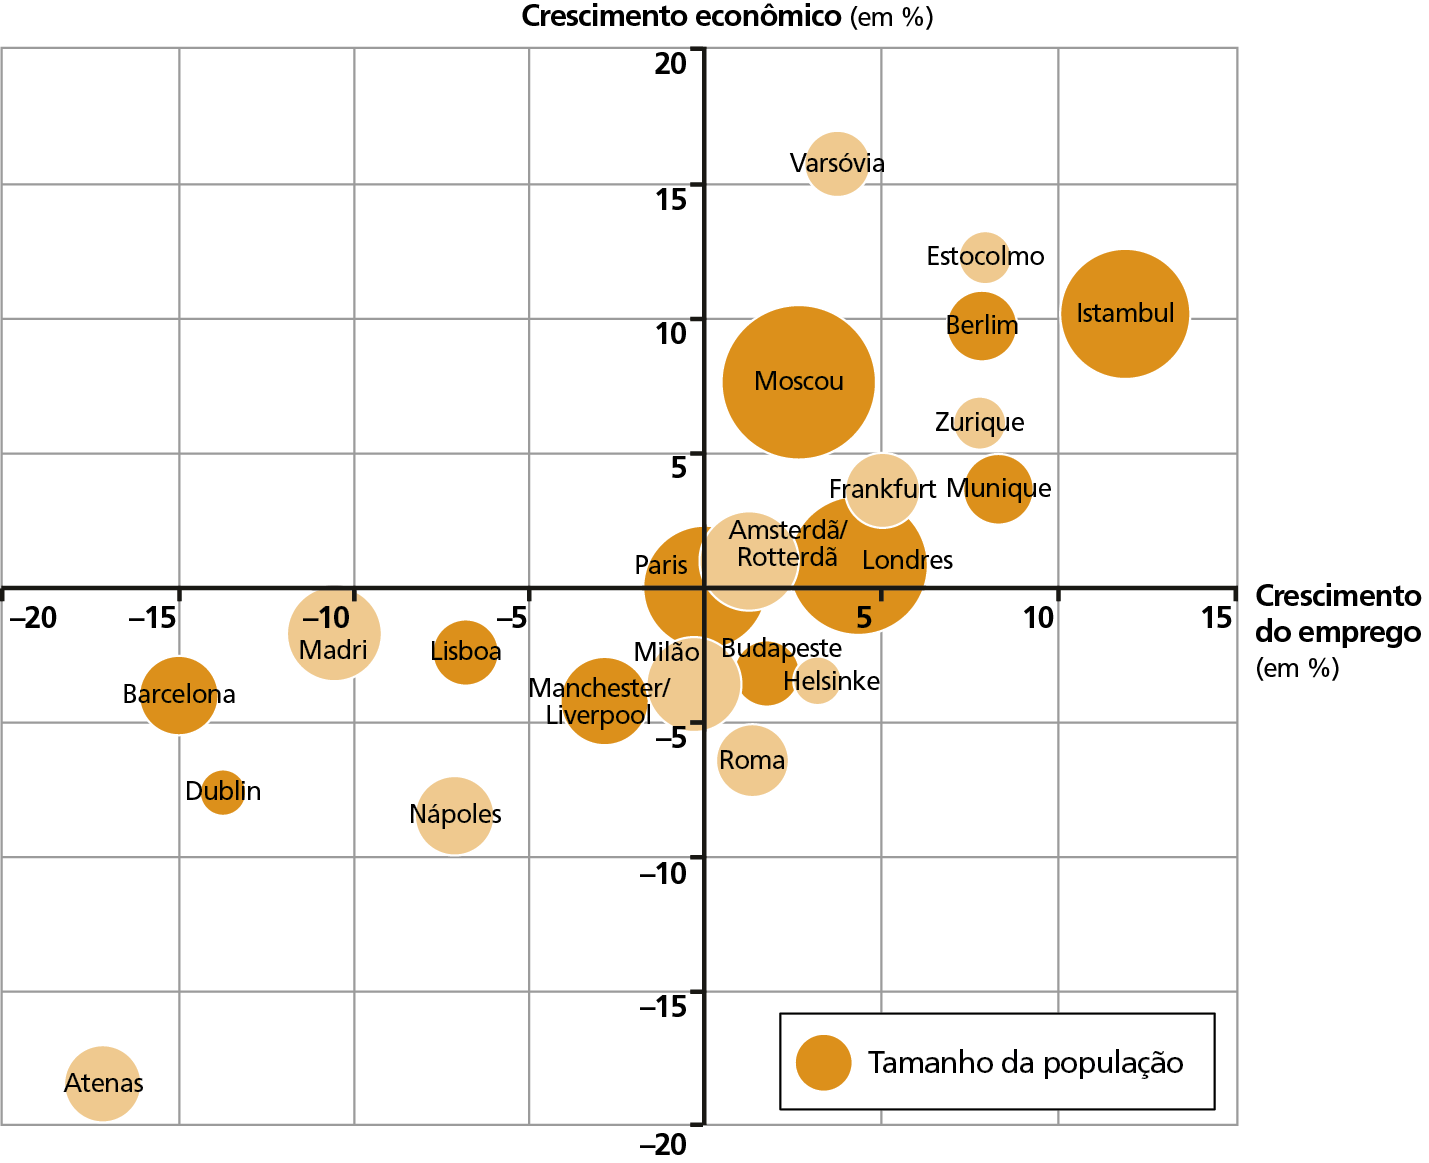 Gráfico. Cidades europeias: crescimento econômico e crescimento de empregos - 2007 a 2012. Gráfico de círculos proporcionais que indicam o tamanho da população das principais cidades europeias e o respectivo crescimento econômico e crescimento de empregos. O crescimento econômico em porcentagem está no eixo vertical e o crescimento de emprego em porcentagem está no eixo horizontal. A cidades estão listadas em ordem crescente, das menores para as maiores populações, conforme os círculos proporcionais representados. Dublin: crescimento econômico de menos 7% e crescimento do emprego de menos 14%. Helsinke: crescimento econômico de menos 4% e crescimento do emprego de 4%. Zurique: crescimento econômico de 6% e crescimento do emprego de 8%. Estocolmo: crescimento econômico de 12% e crescimento do emprego de 8%. Varsóvia: crescimento econômico de 16% e crescimento do emprego de 4%. Roma: crescimento econômico de menos 6% e crescimento do emprego de 2%. Berlim: crescimento econômico de 10% e crescimento do emprego de 8%. Munique: crescimento econômico de 4% e crescimento do emprego de 9%. Lisboa: crescimento econômico de menos 2% e crescimento do emprego de menos 7%. Budapeste: crescimento econômico de menos 4% e crescimento do emprego de 2%. Nápoles: crescimento econômico de menos 8% e crescimento do emprego de menos 6%. Atenas: crescimento econômico de menos 18% e crescimento do emprego de menos 18%. Barcelona: crescimento econômico de menos 4% e crescimento do emprego de menos 15%. Frankfurt: crescimento econômico de 5% e crescimento do emprego de 5%. Milão: crescimento econômico de menos 3% e crescimento do emprego de menos 2%. Manchester/Liverpool: crescimento econômico de menos 4% e crescimento do emprego de menos 3%. Madri: crescimento econômico de menos 1% e crescimento do emprego de menos 10%. Istambul: crescimento econômico de 10% e crescimento do emprego de 12%. Moscou: crescimento econômico de 8% e crescimento do emprego de 5%. Londres: crescimento econômico de 2% e crescimento do emprego de 5%. Paris: crescimento econômico de 0% e crescimento do emprego de 0%.